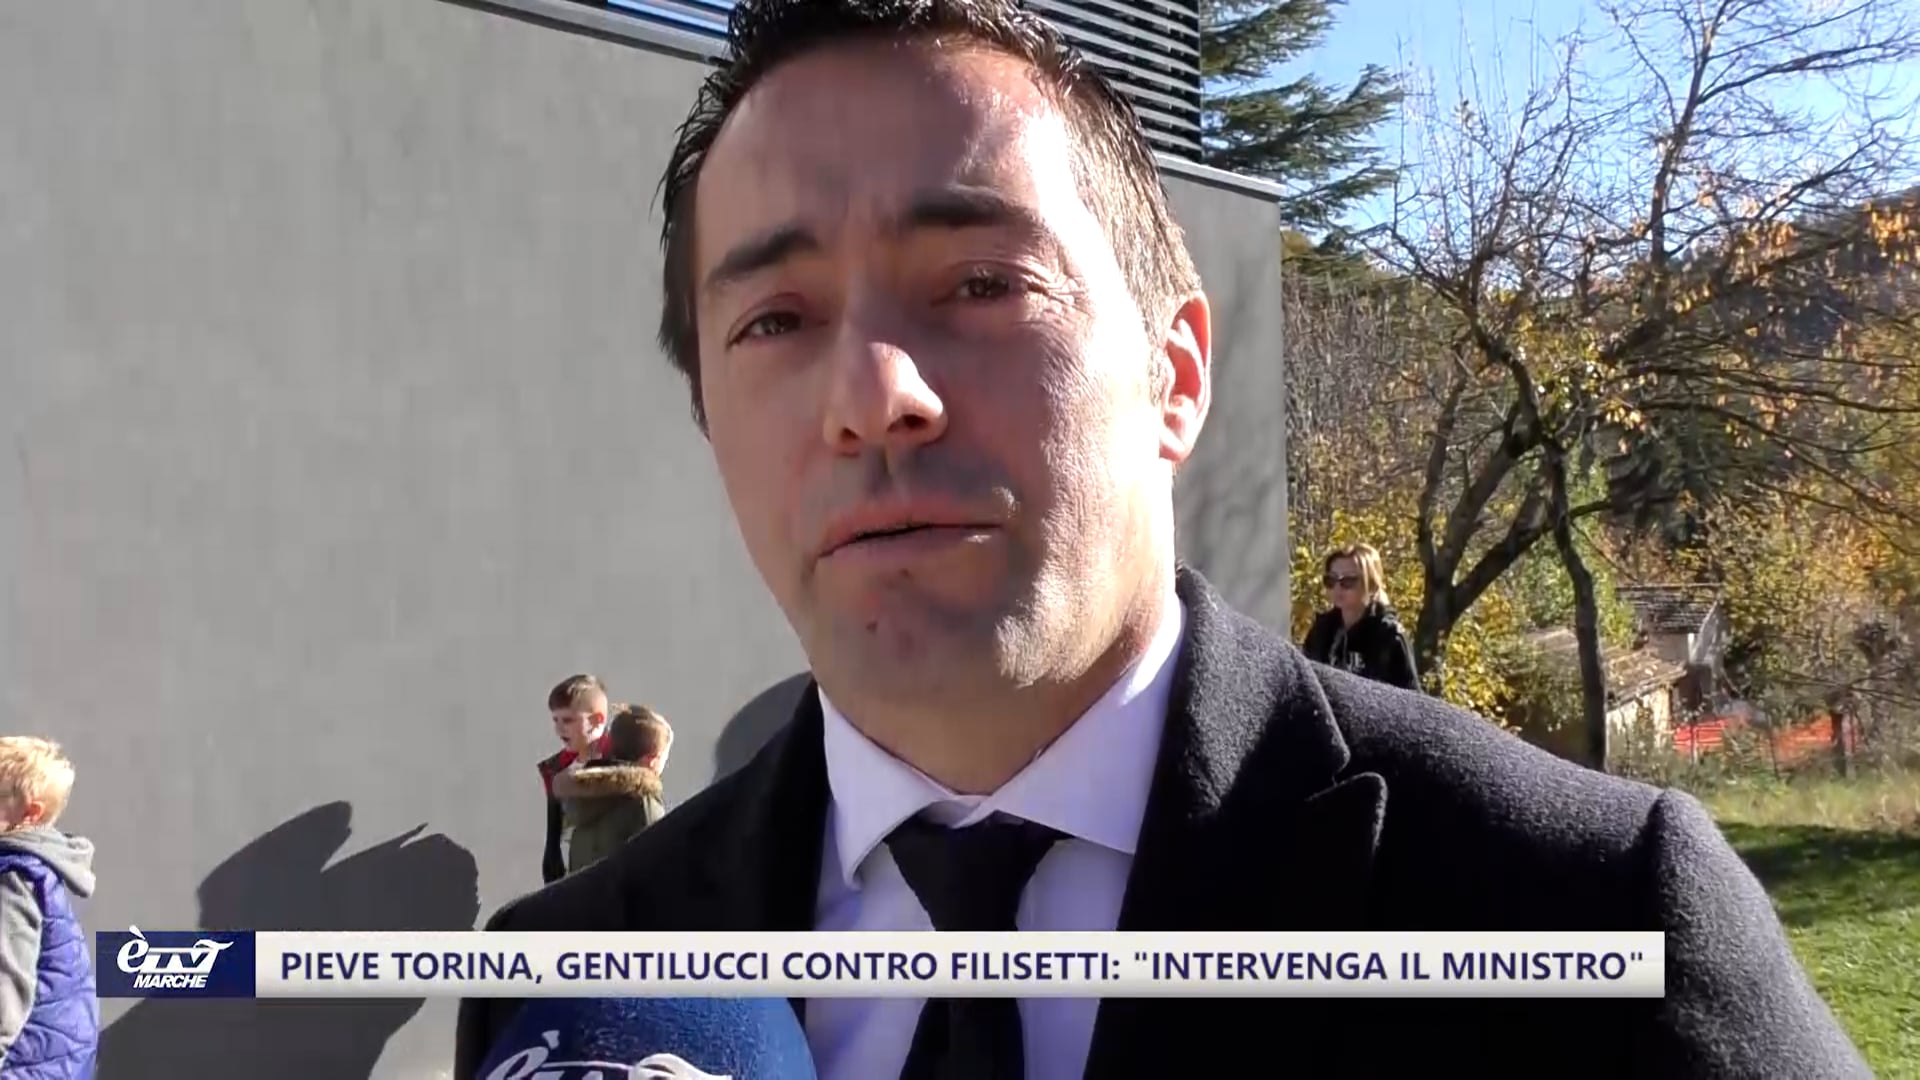 Pieve Torina, Gentilucci contro Filisetti: “Intervenga il Ministro”